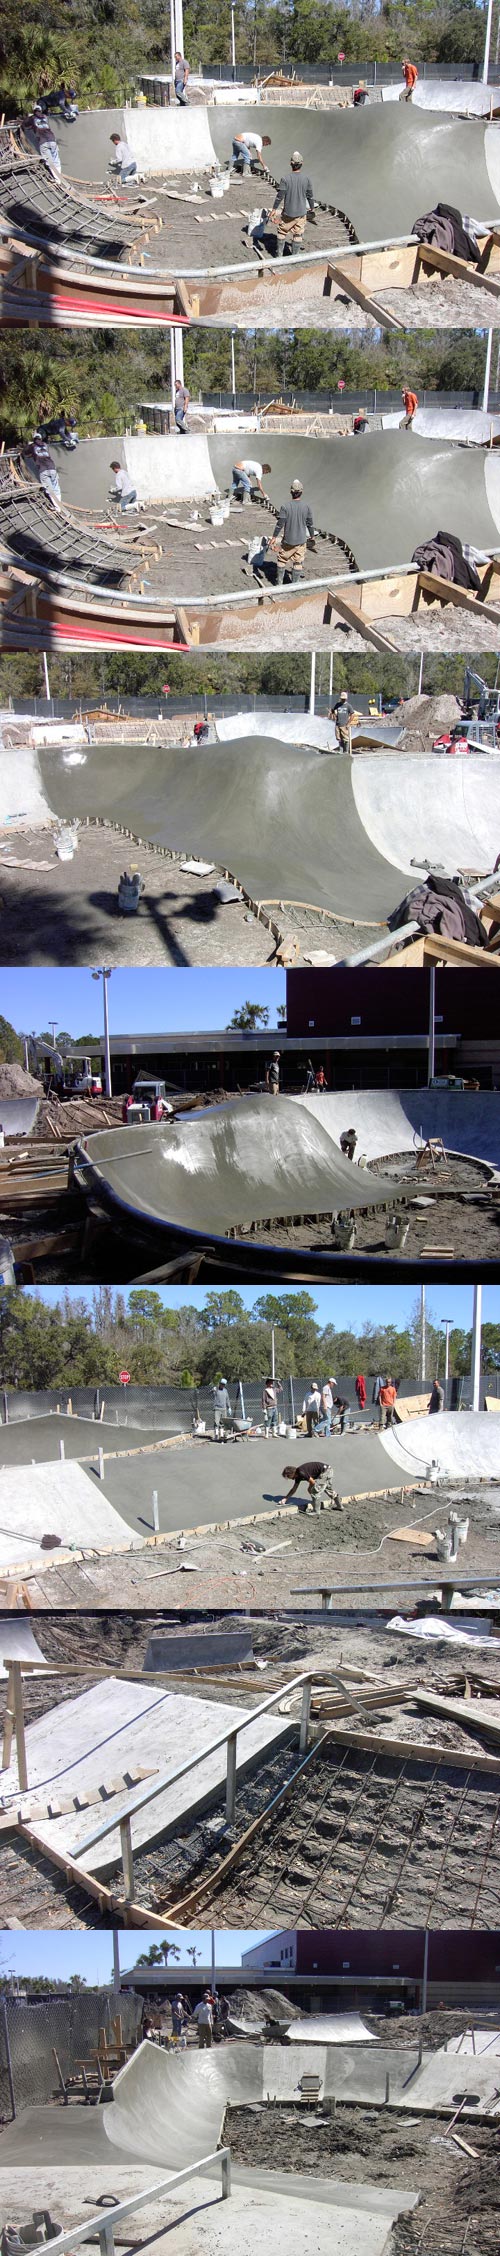 New Tampa Skatepark